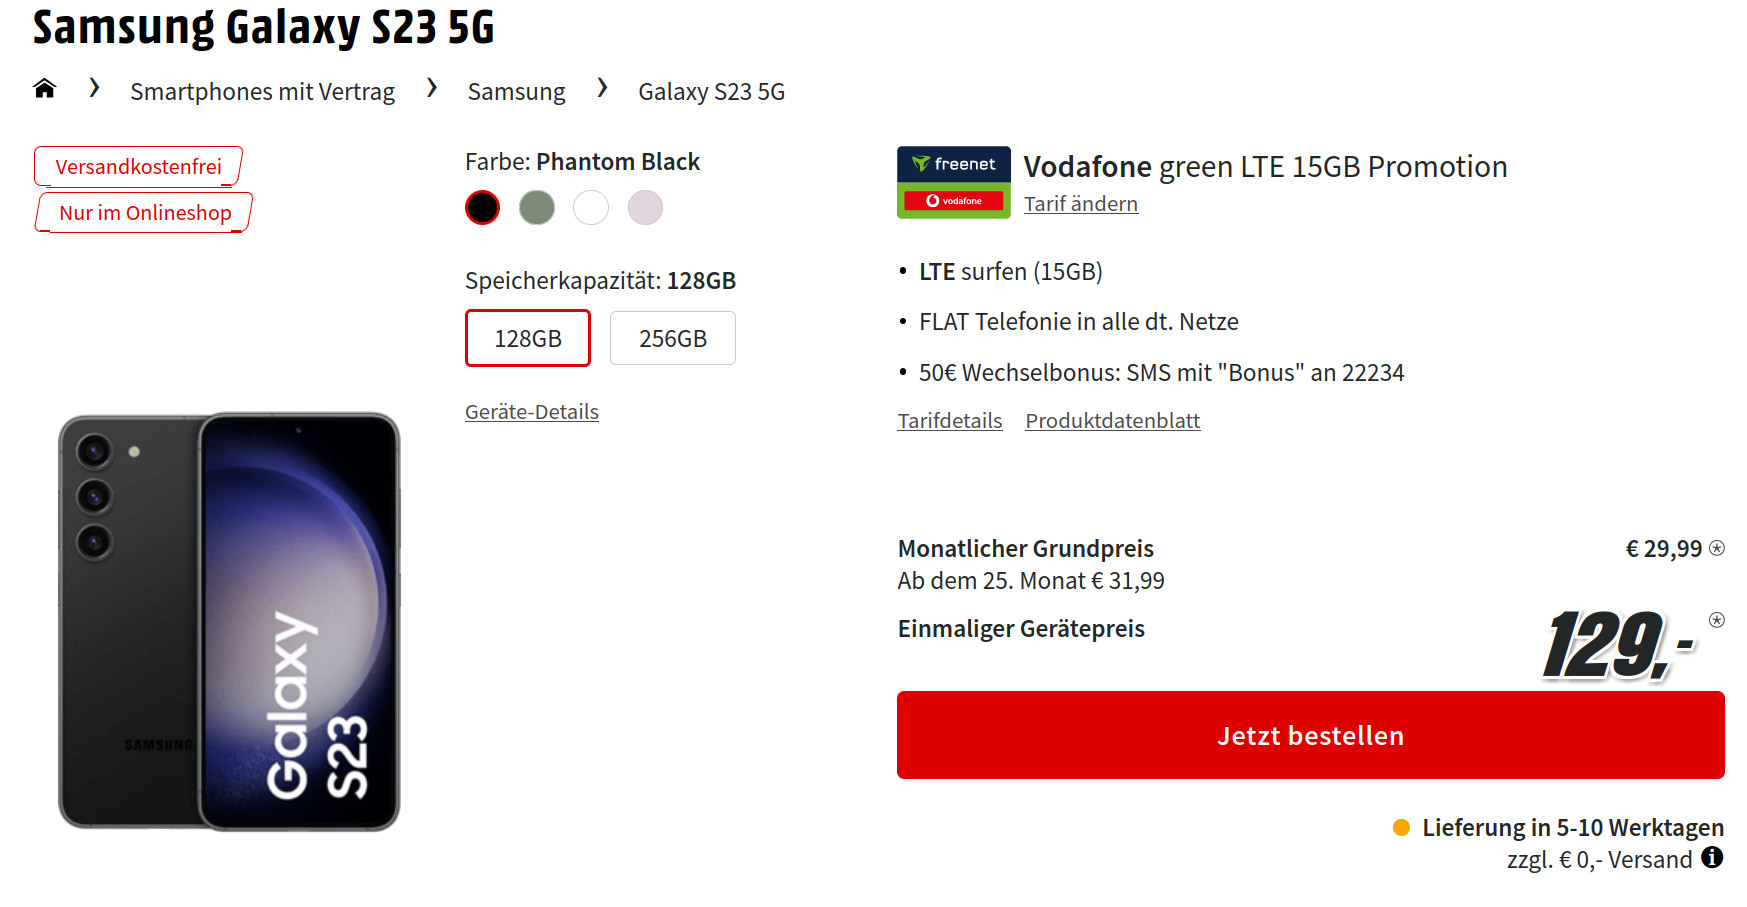 Galaxy S23 Tarife: 15 GB Allnet-Flat Tarif im Vodafone Netz für 29,99 Euro und 50 Euro Wechselbonus